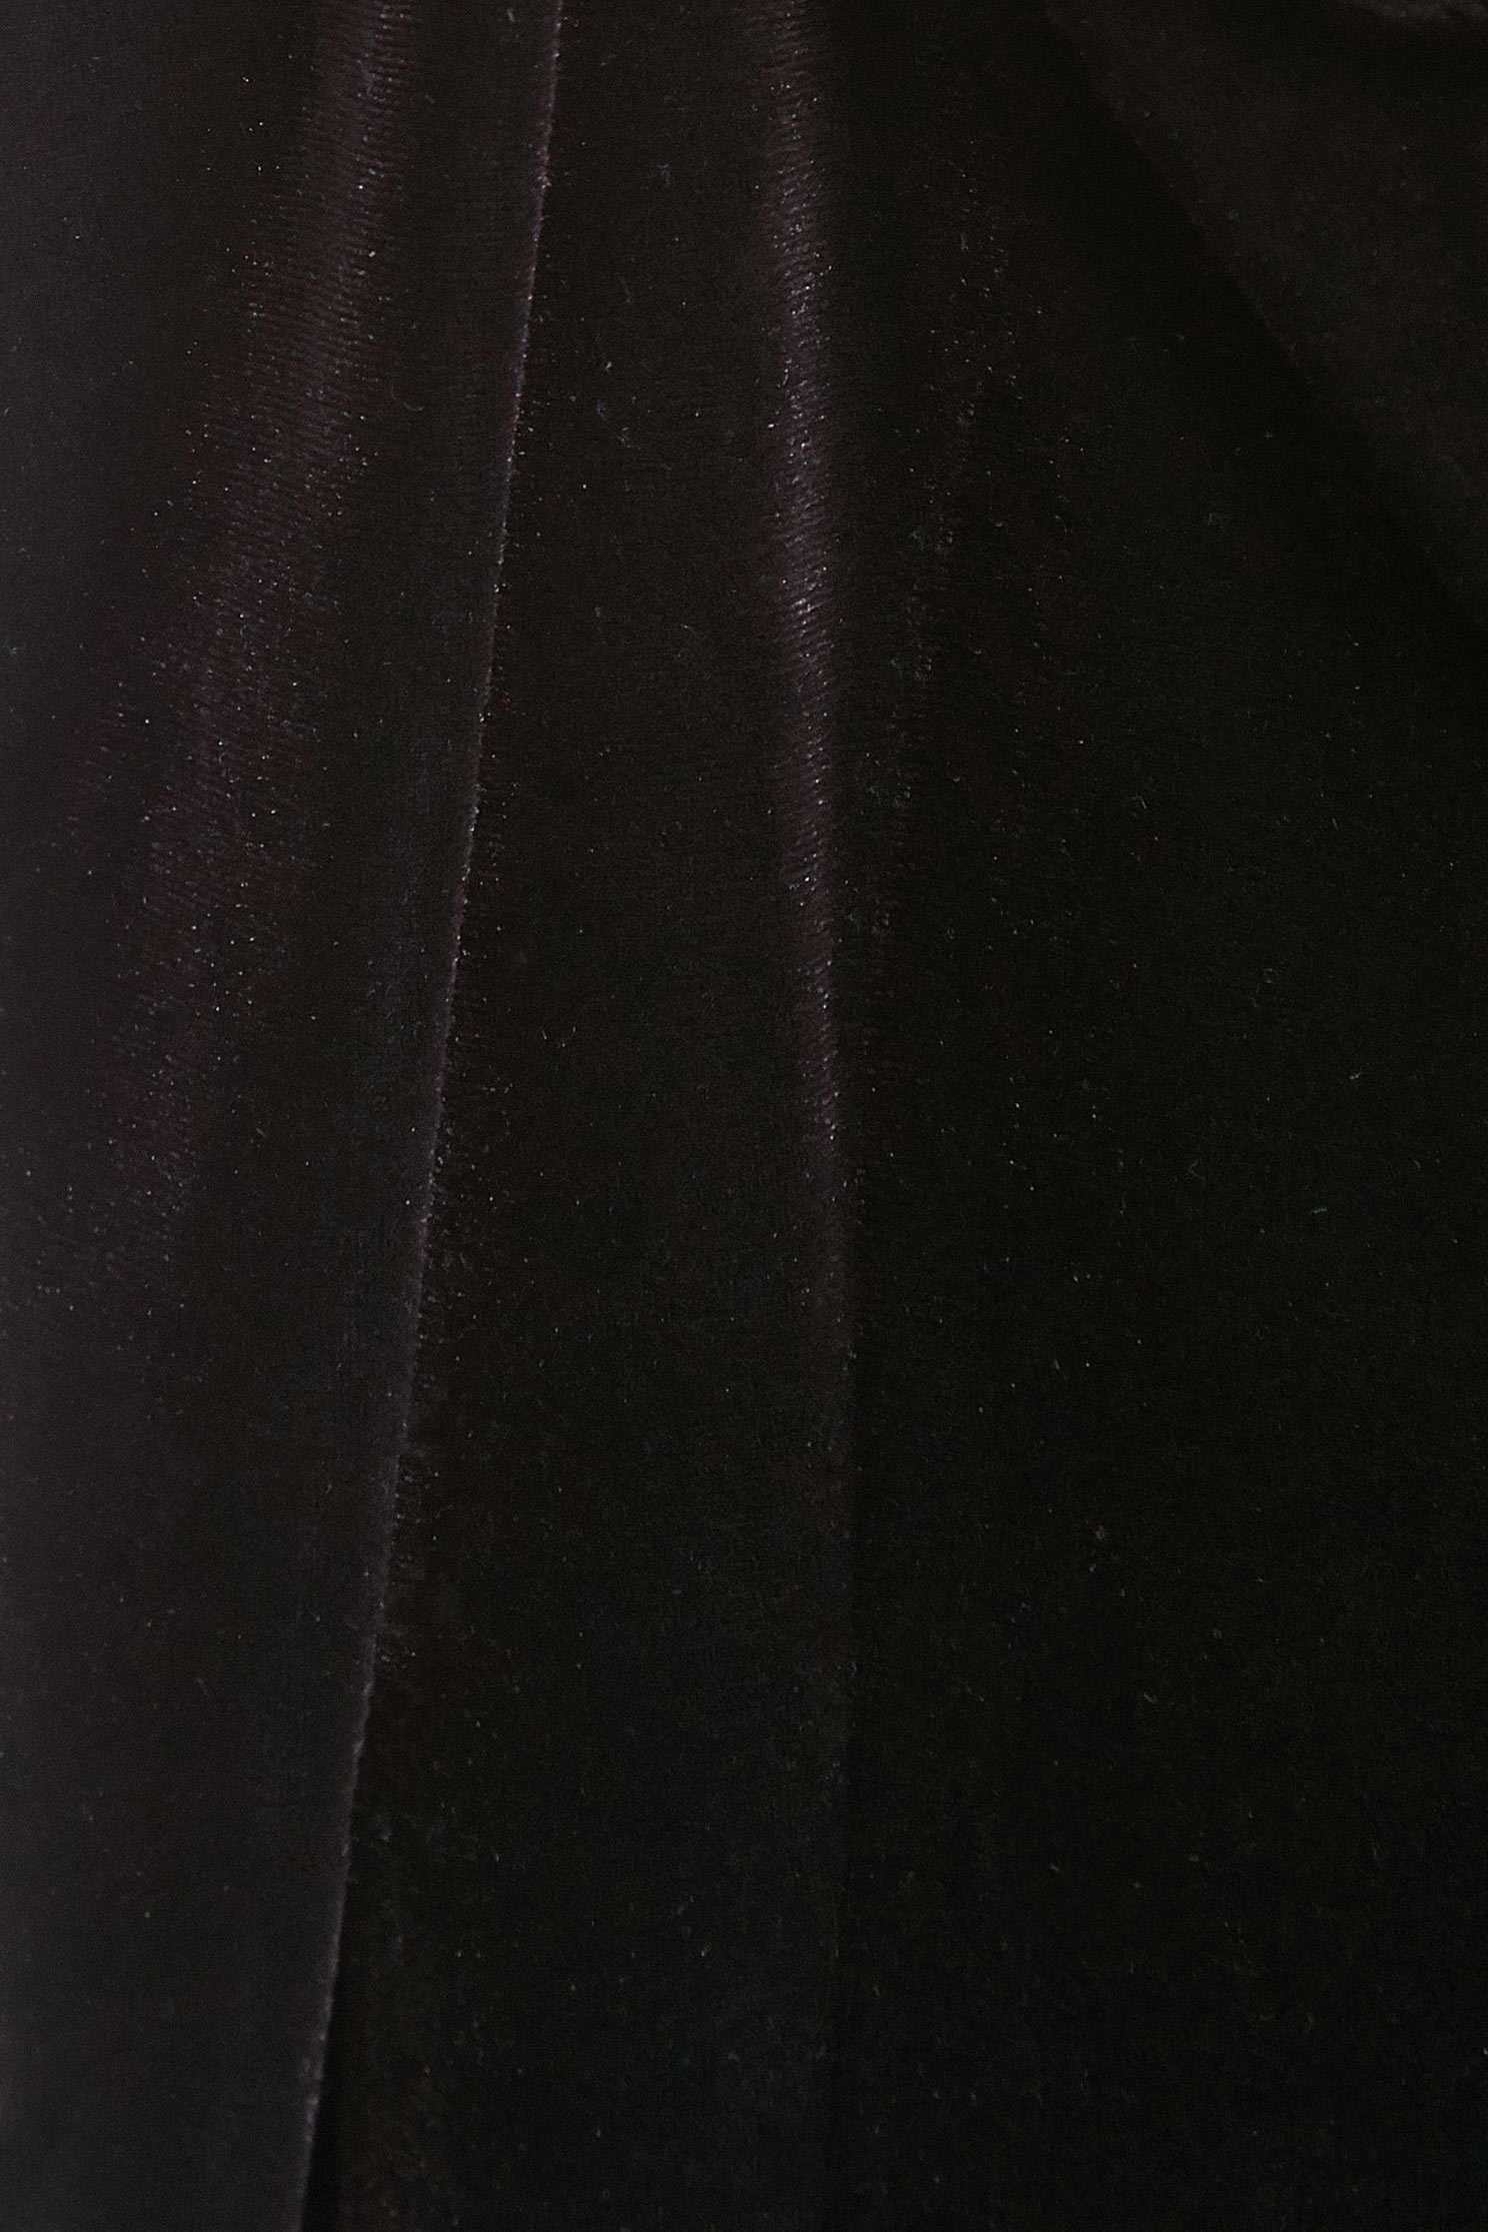 黑絨羽毛平口短洋黑絨羽毛平口短洋,一字領洋裝,一般洋裝,小禮服,禮服,秋冬穿搭,連身洋裝,長袖洋裝,黑色洋裝